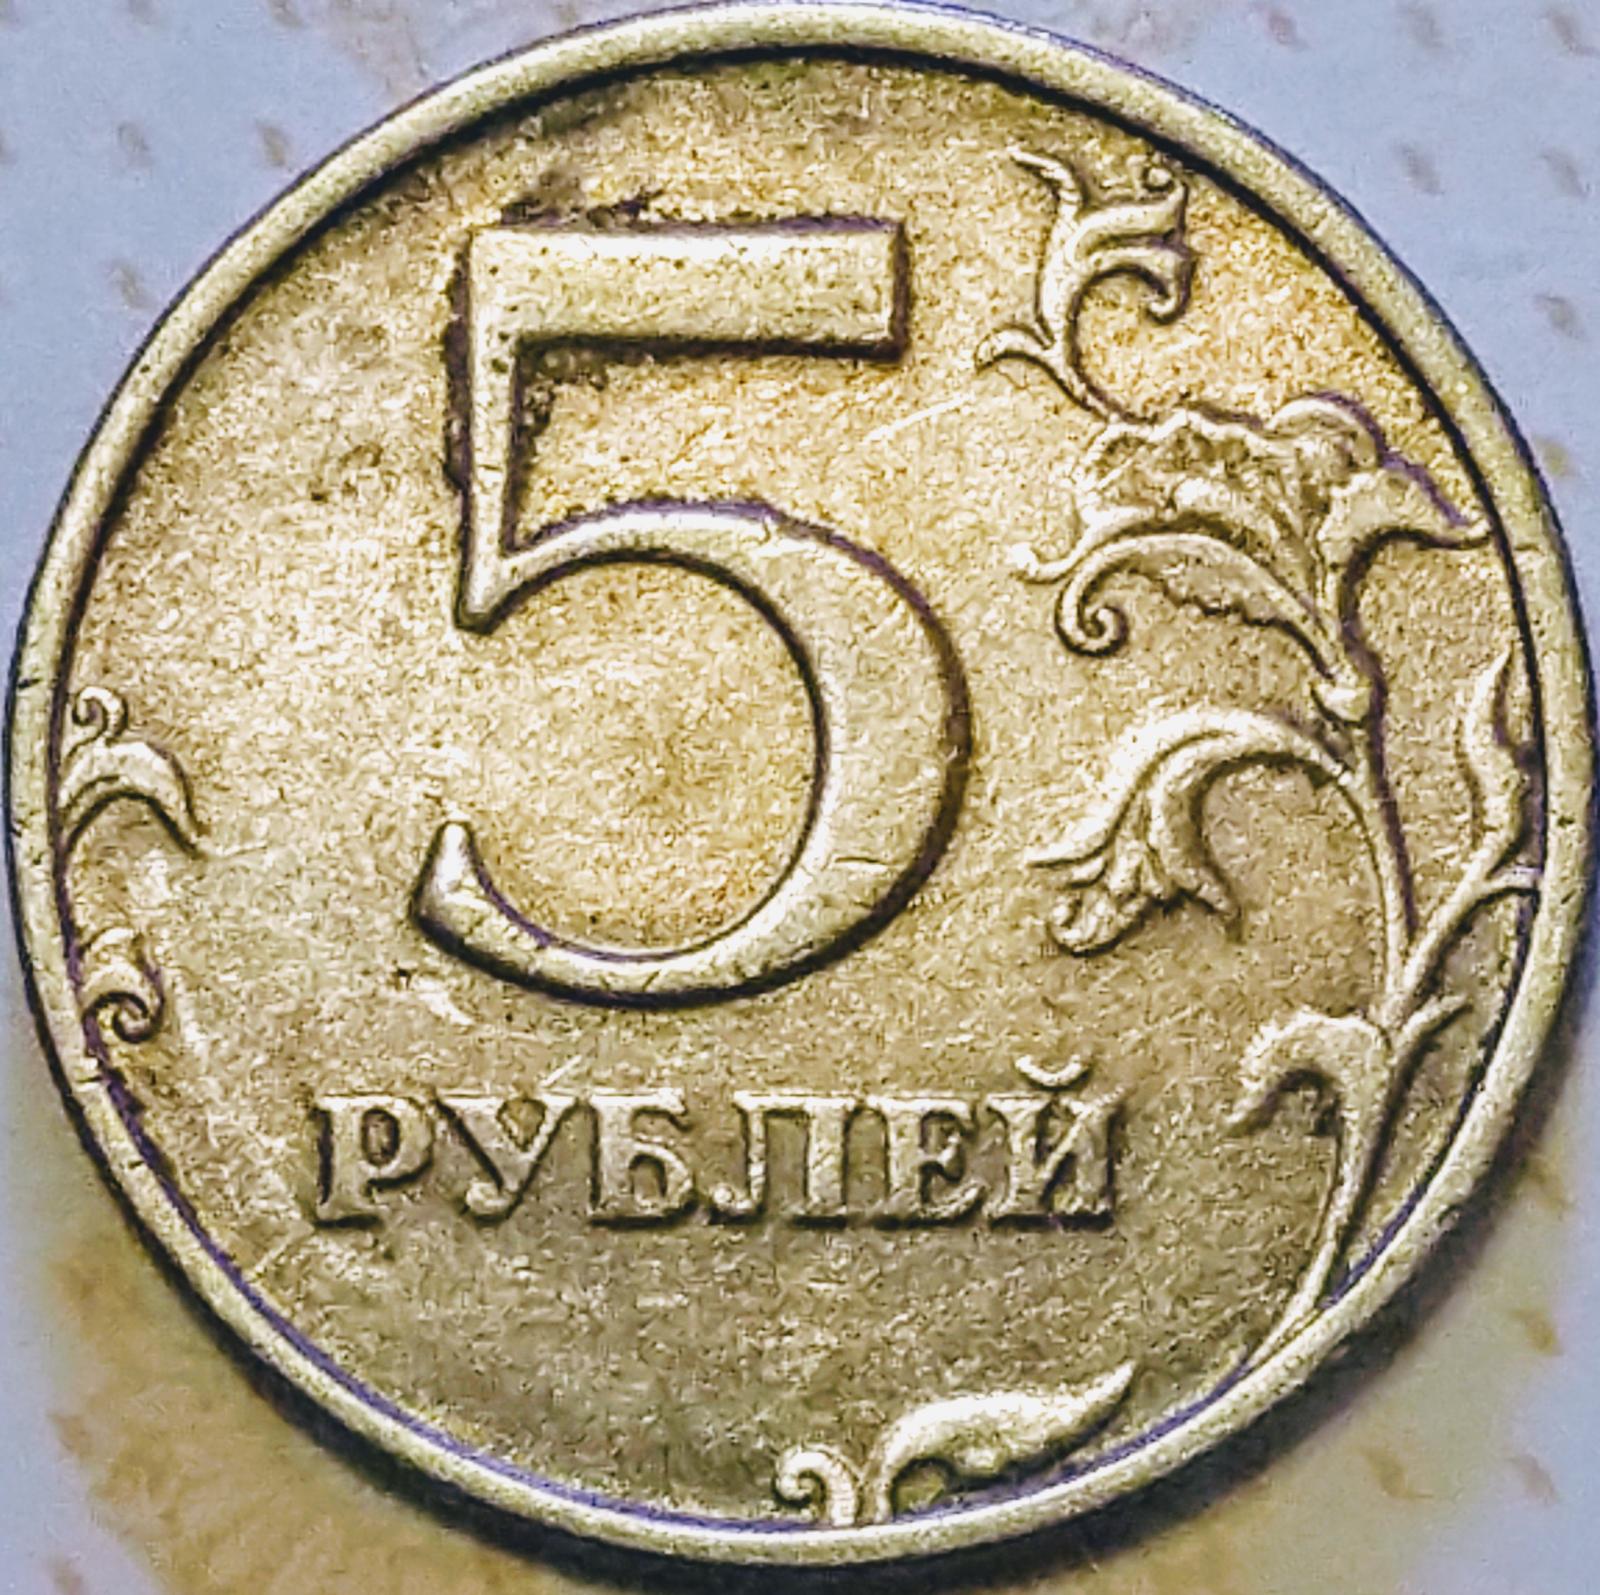 5 рублей в обращении. Монета 5 рублей 1998 СПМД. 5 Рублей 1998 года. Штемпель 2.23 5 рублей. 5 Рублей с малой точкой.